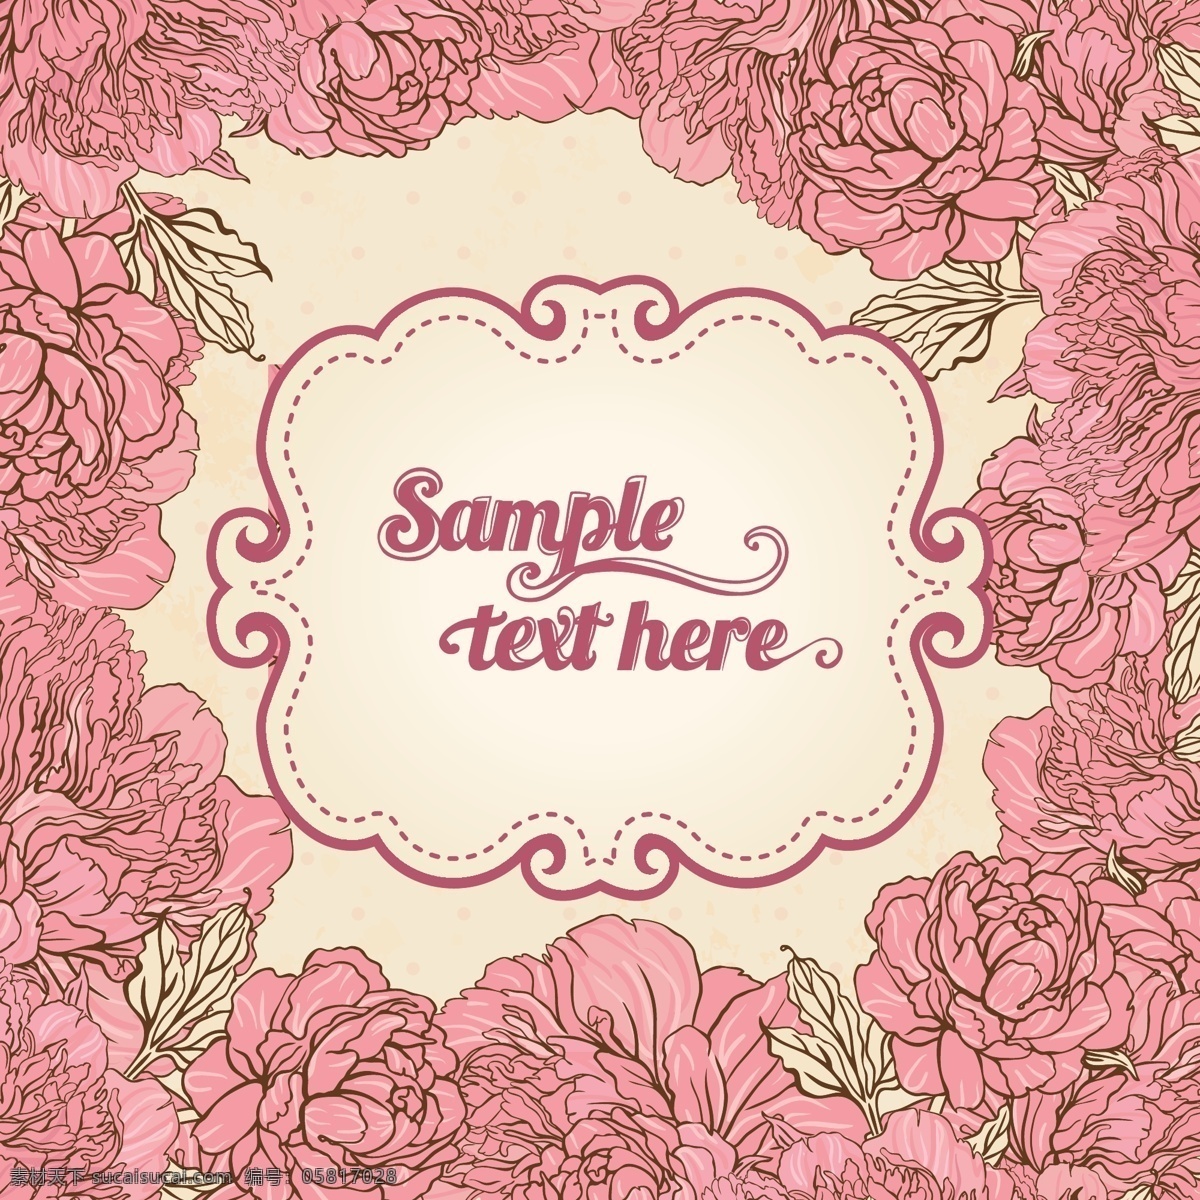 炫彩 花卉 粉色 矢量素材 手绘 炫彩花卉 邀请卡 邀请 卡 矢量图